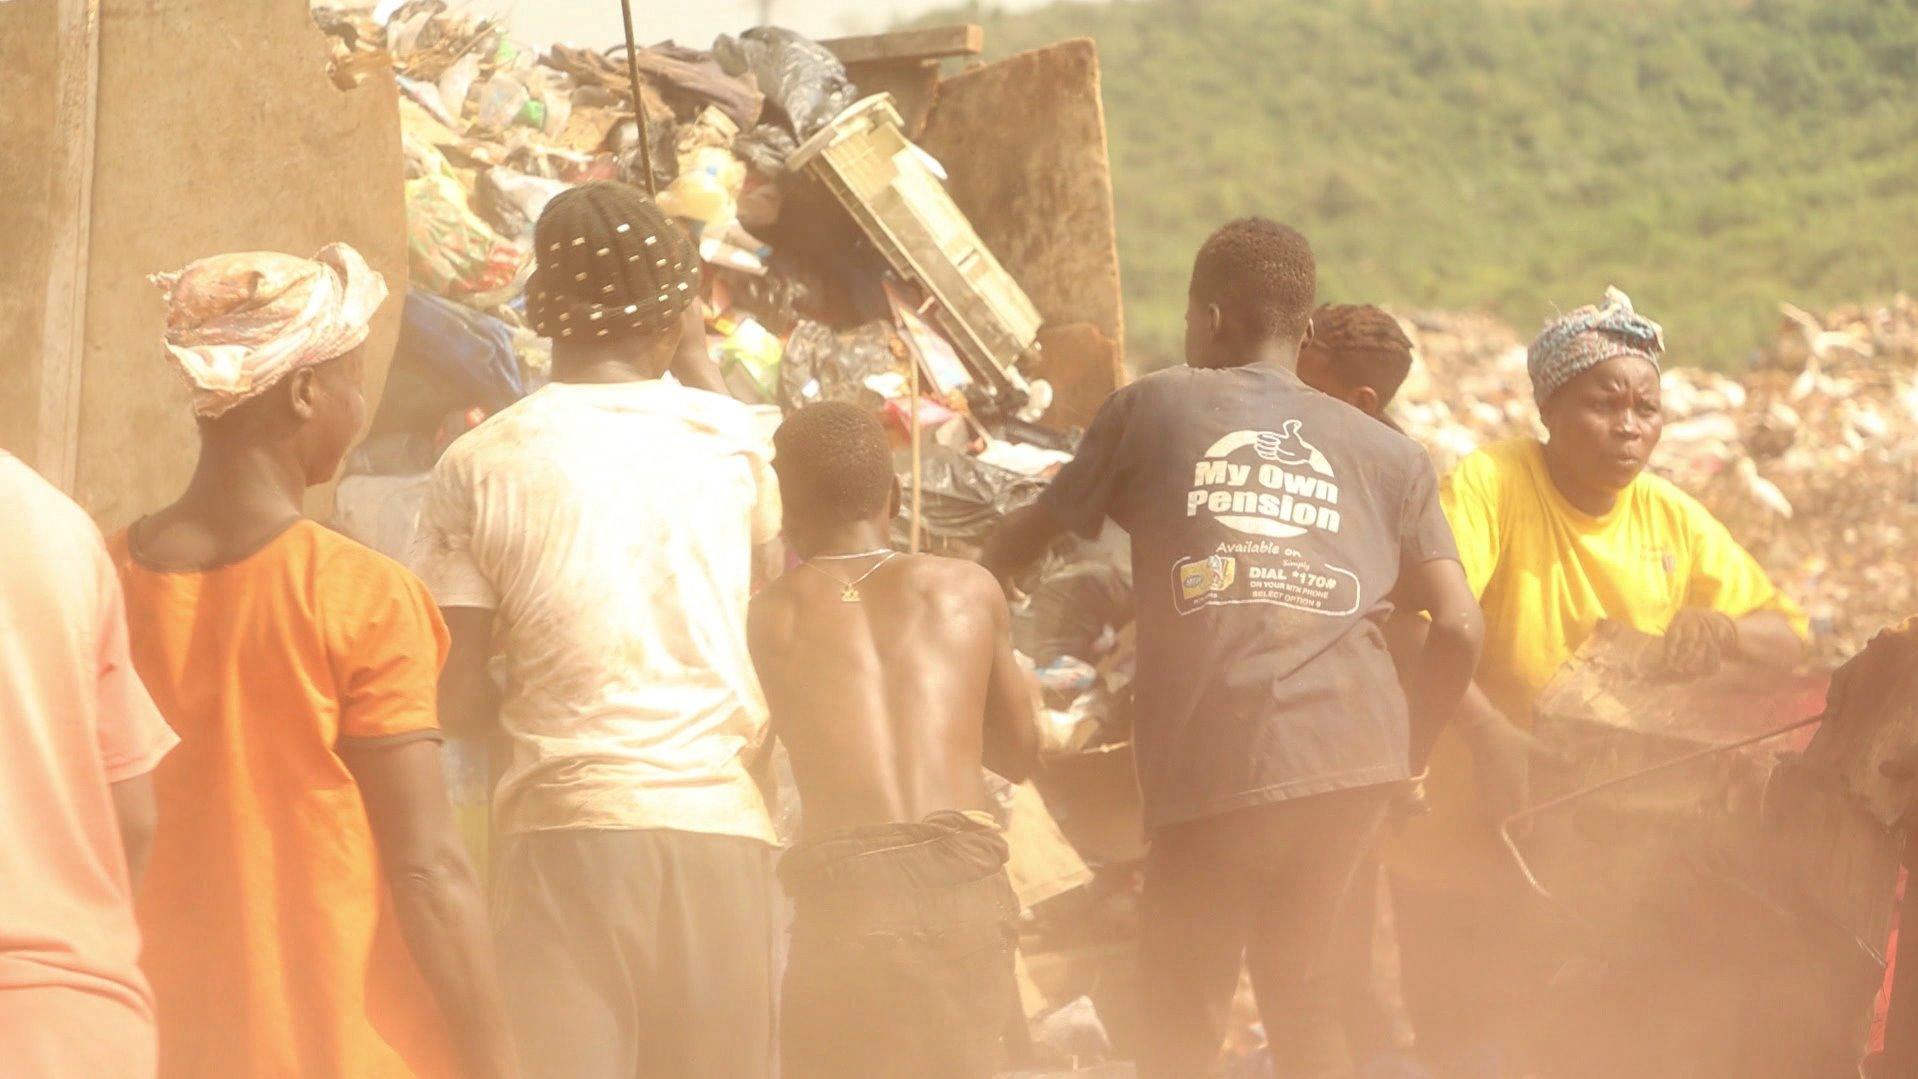 Jeden Tag riskieren Plünderer auf riesigen Müllkippen in Ghana ihre Gesundheit